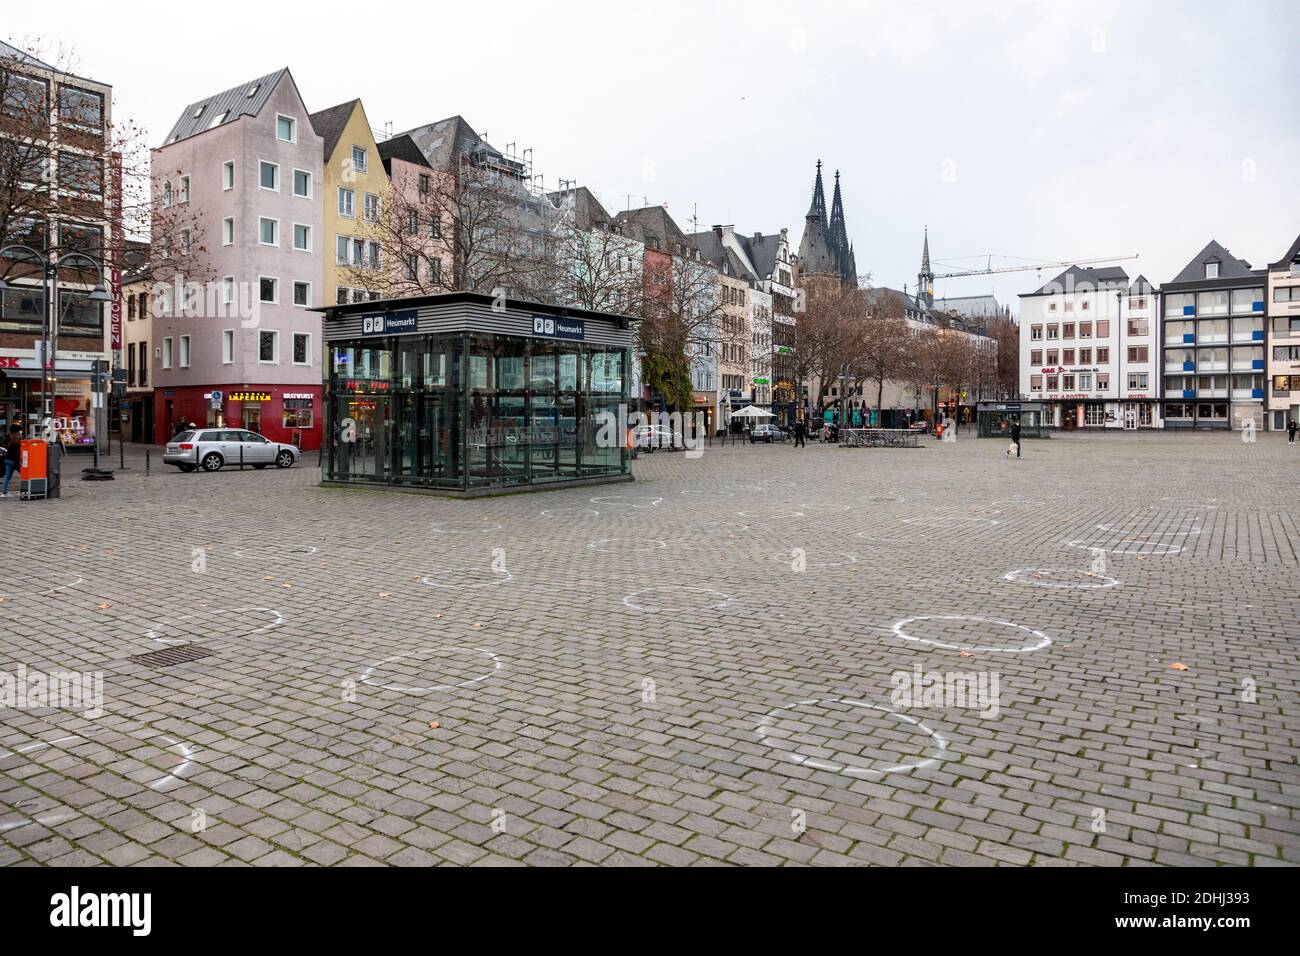 Heumarkt à Cologne, peu de passants pendant le confinement dû à la pandémie du coronavirus Banque D'Images